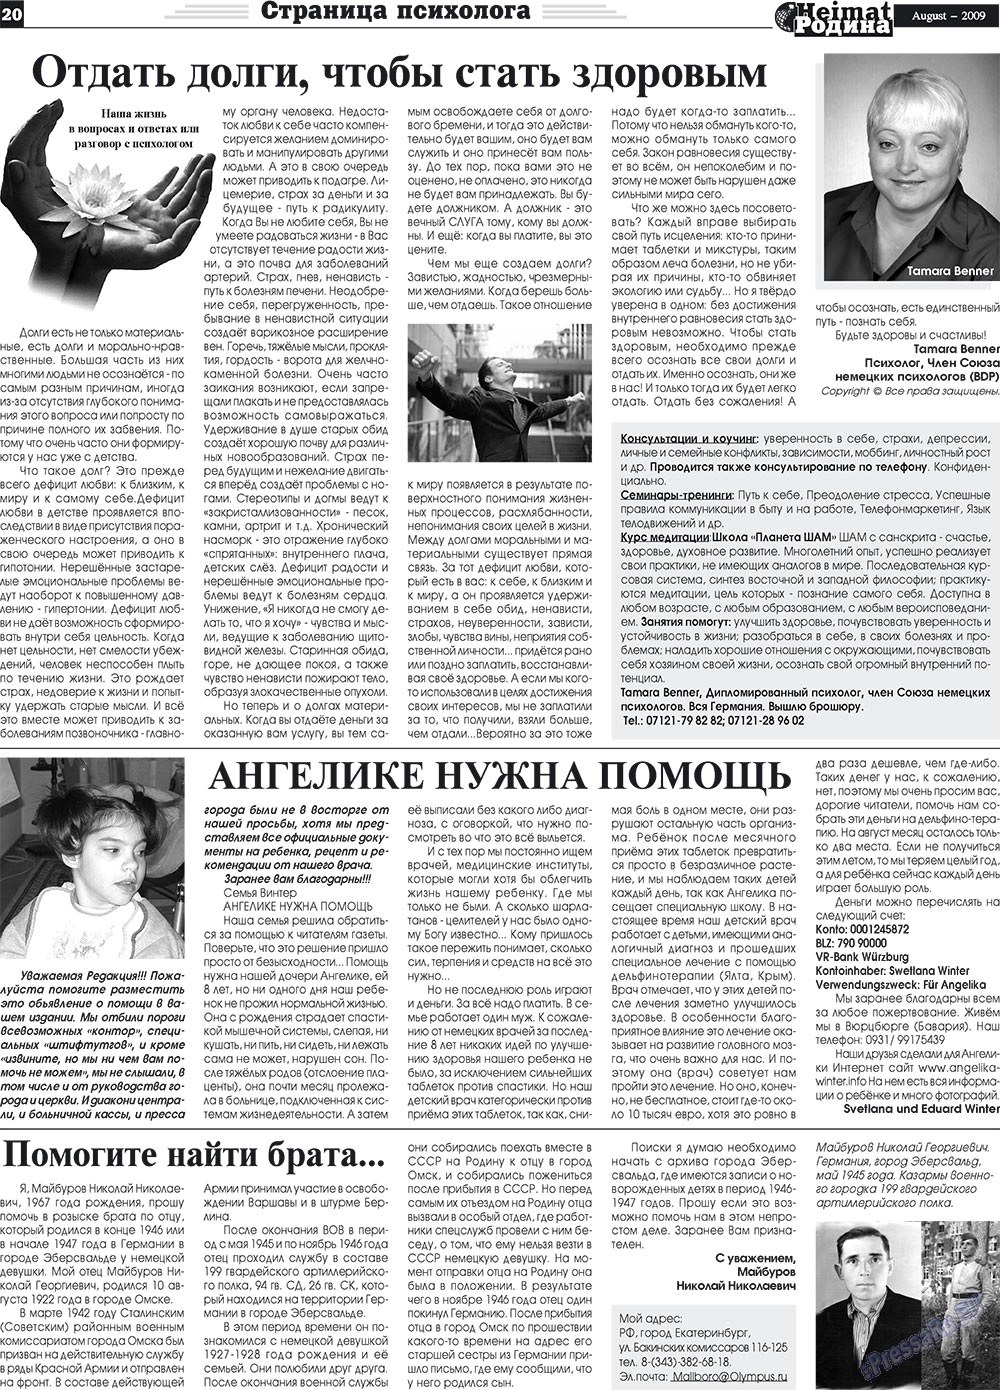 Heimat-Родина (газета). 2009 год, номер 8, стр. 20